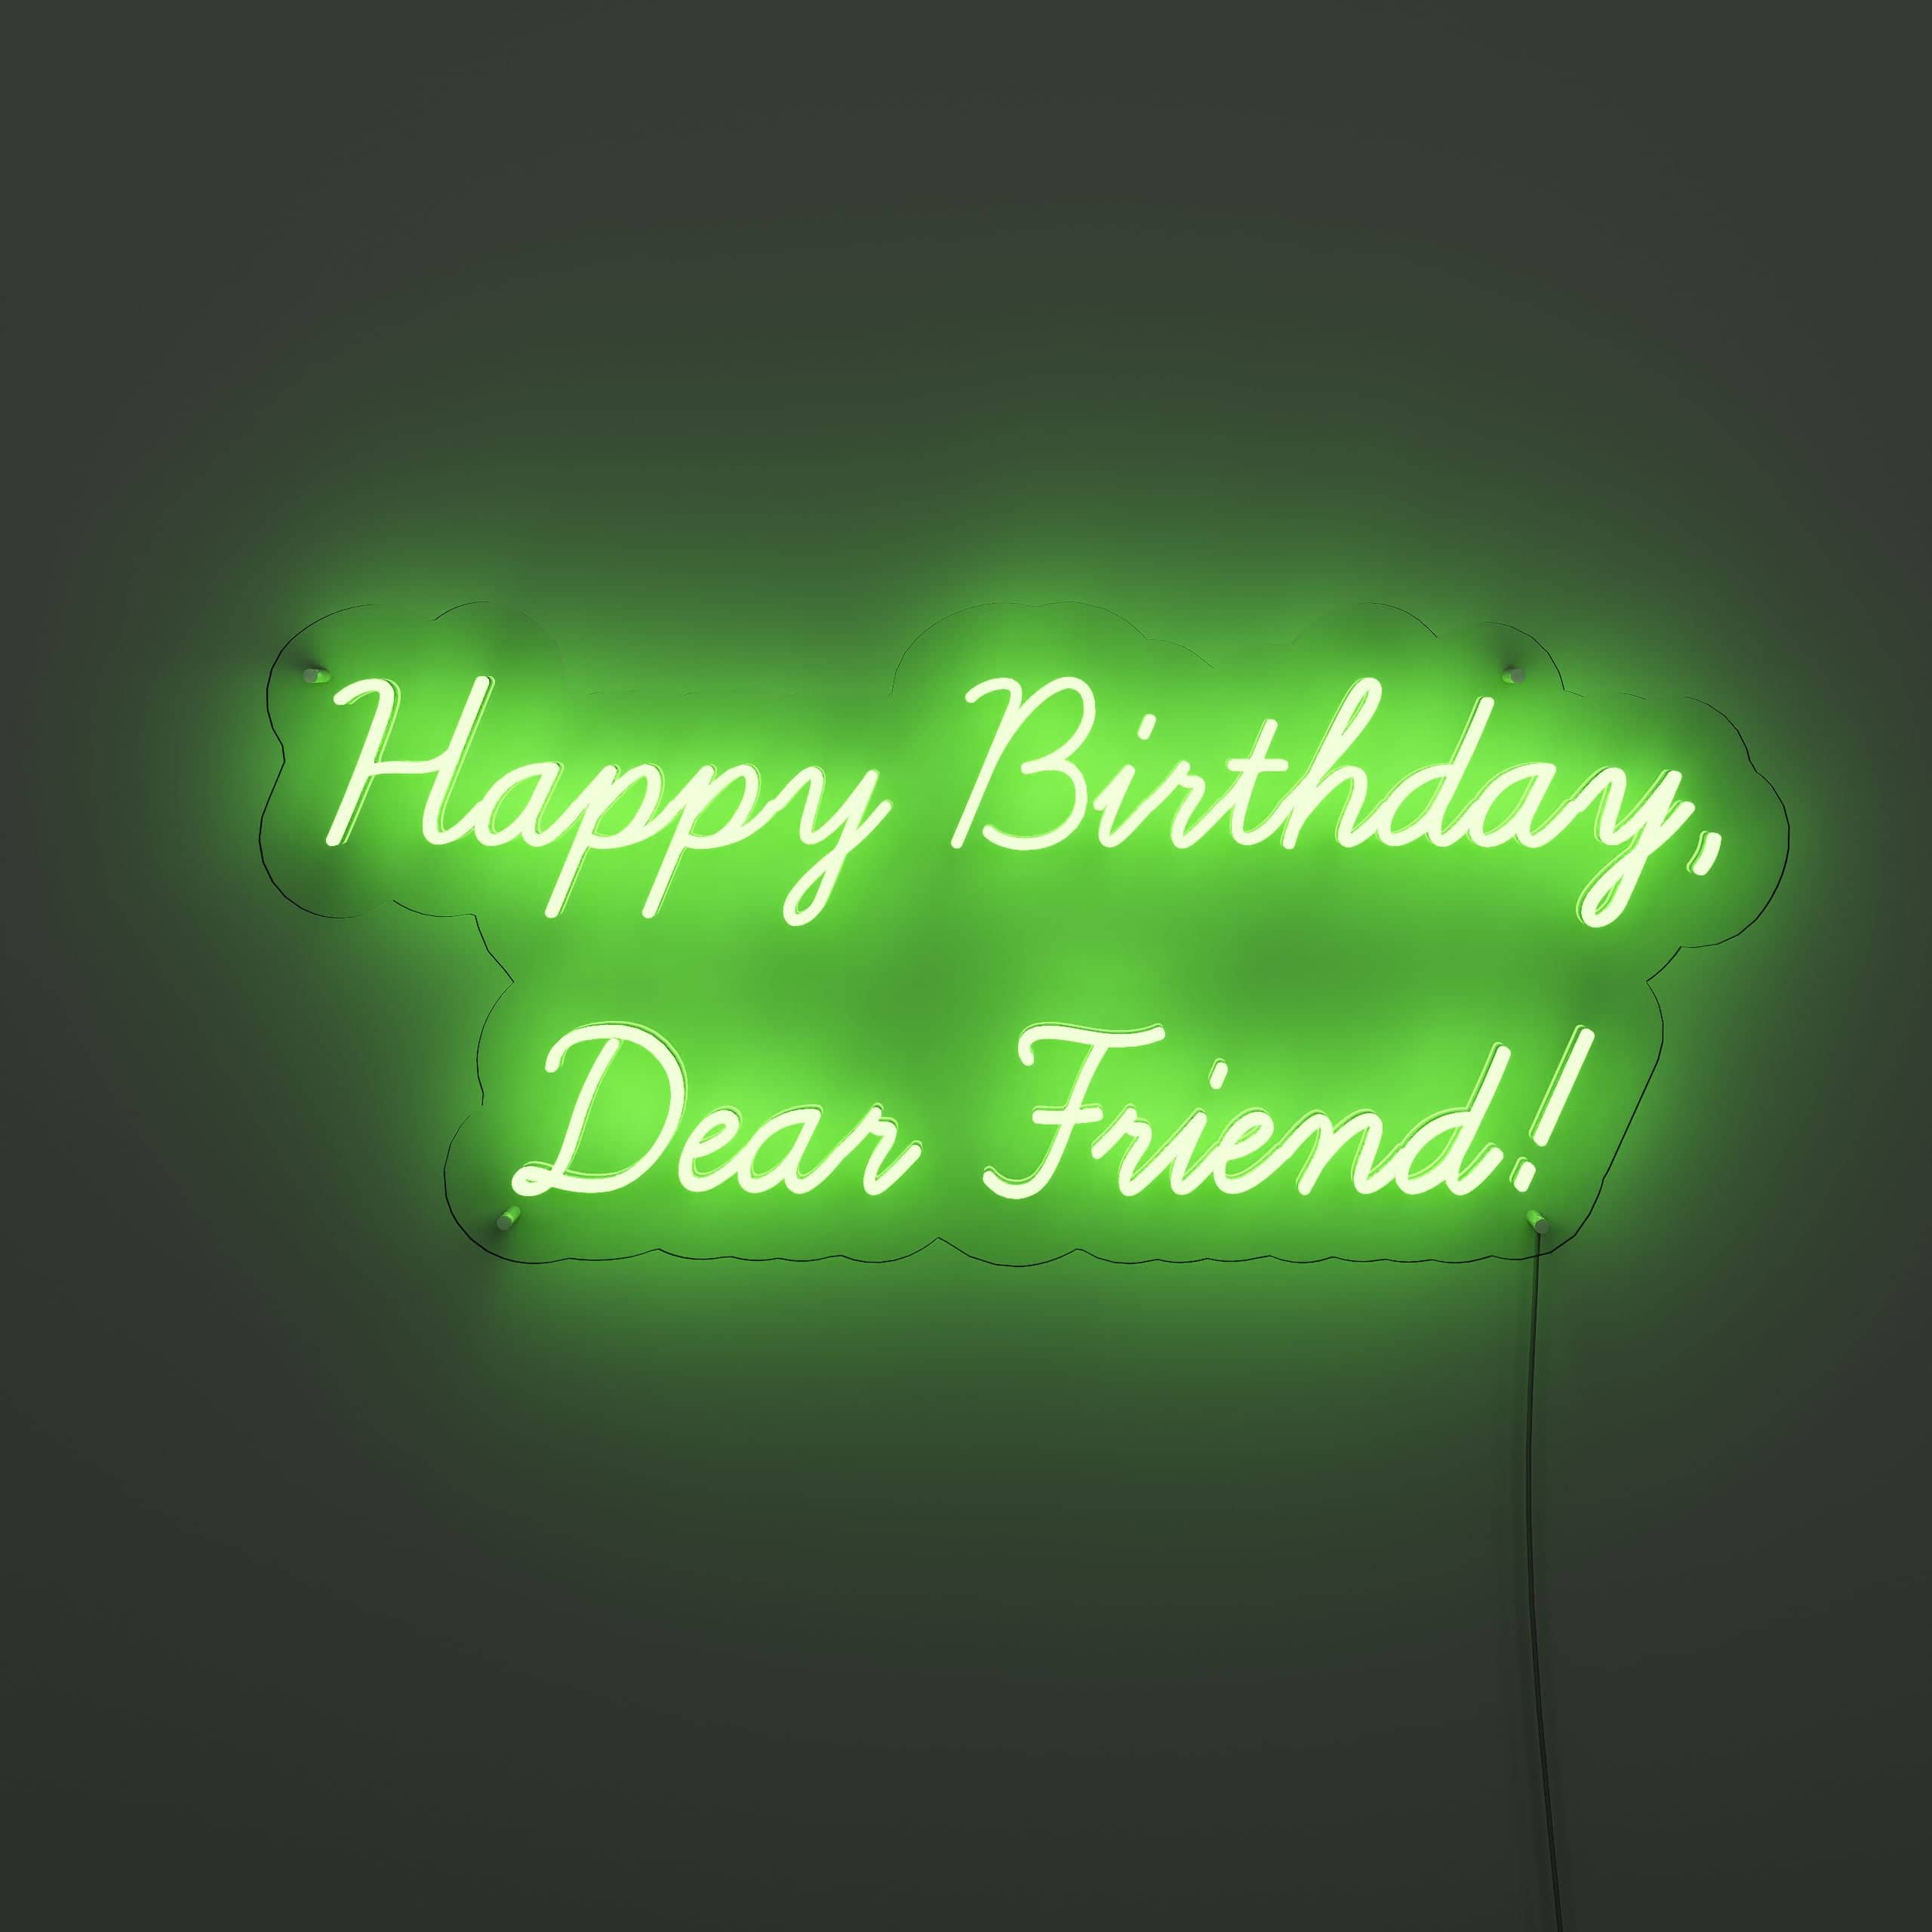 sending-warm-wishes-to-my-dearest-friend-on-their-birthday!-neon-sign-lite